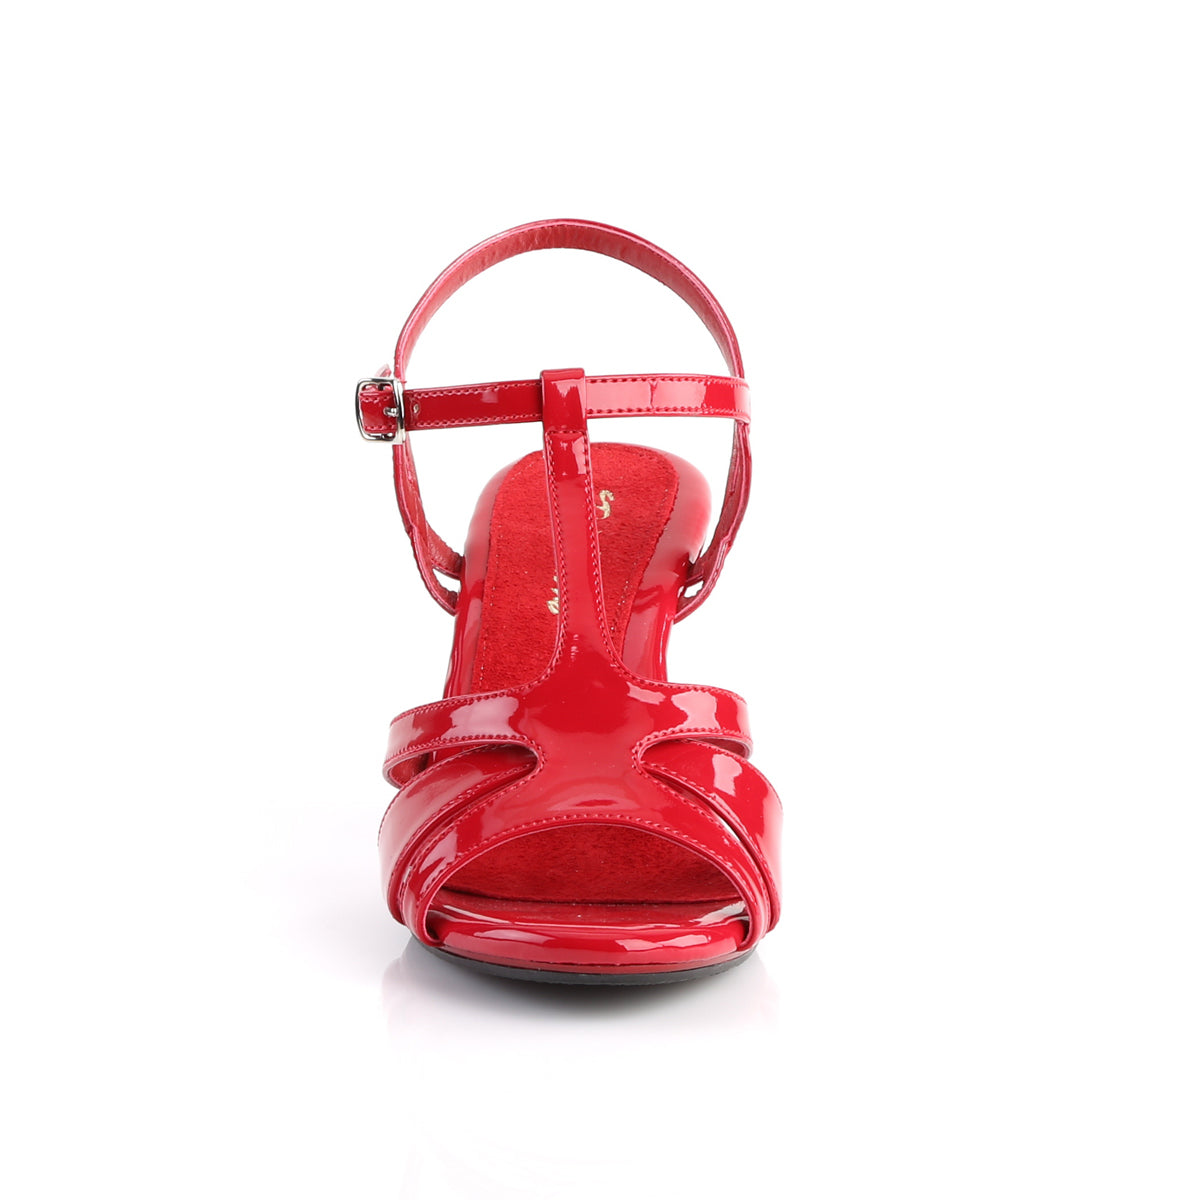 Fabulicious Sandalias para mujer BELLE-322 Patente roja / rojo